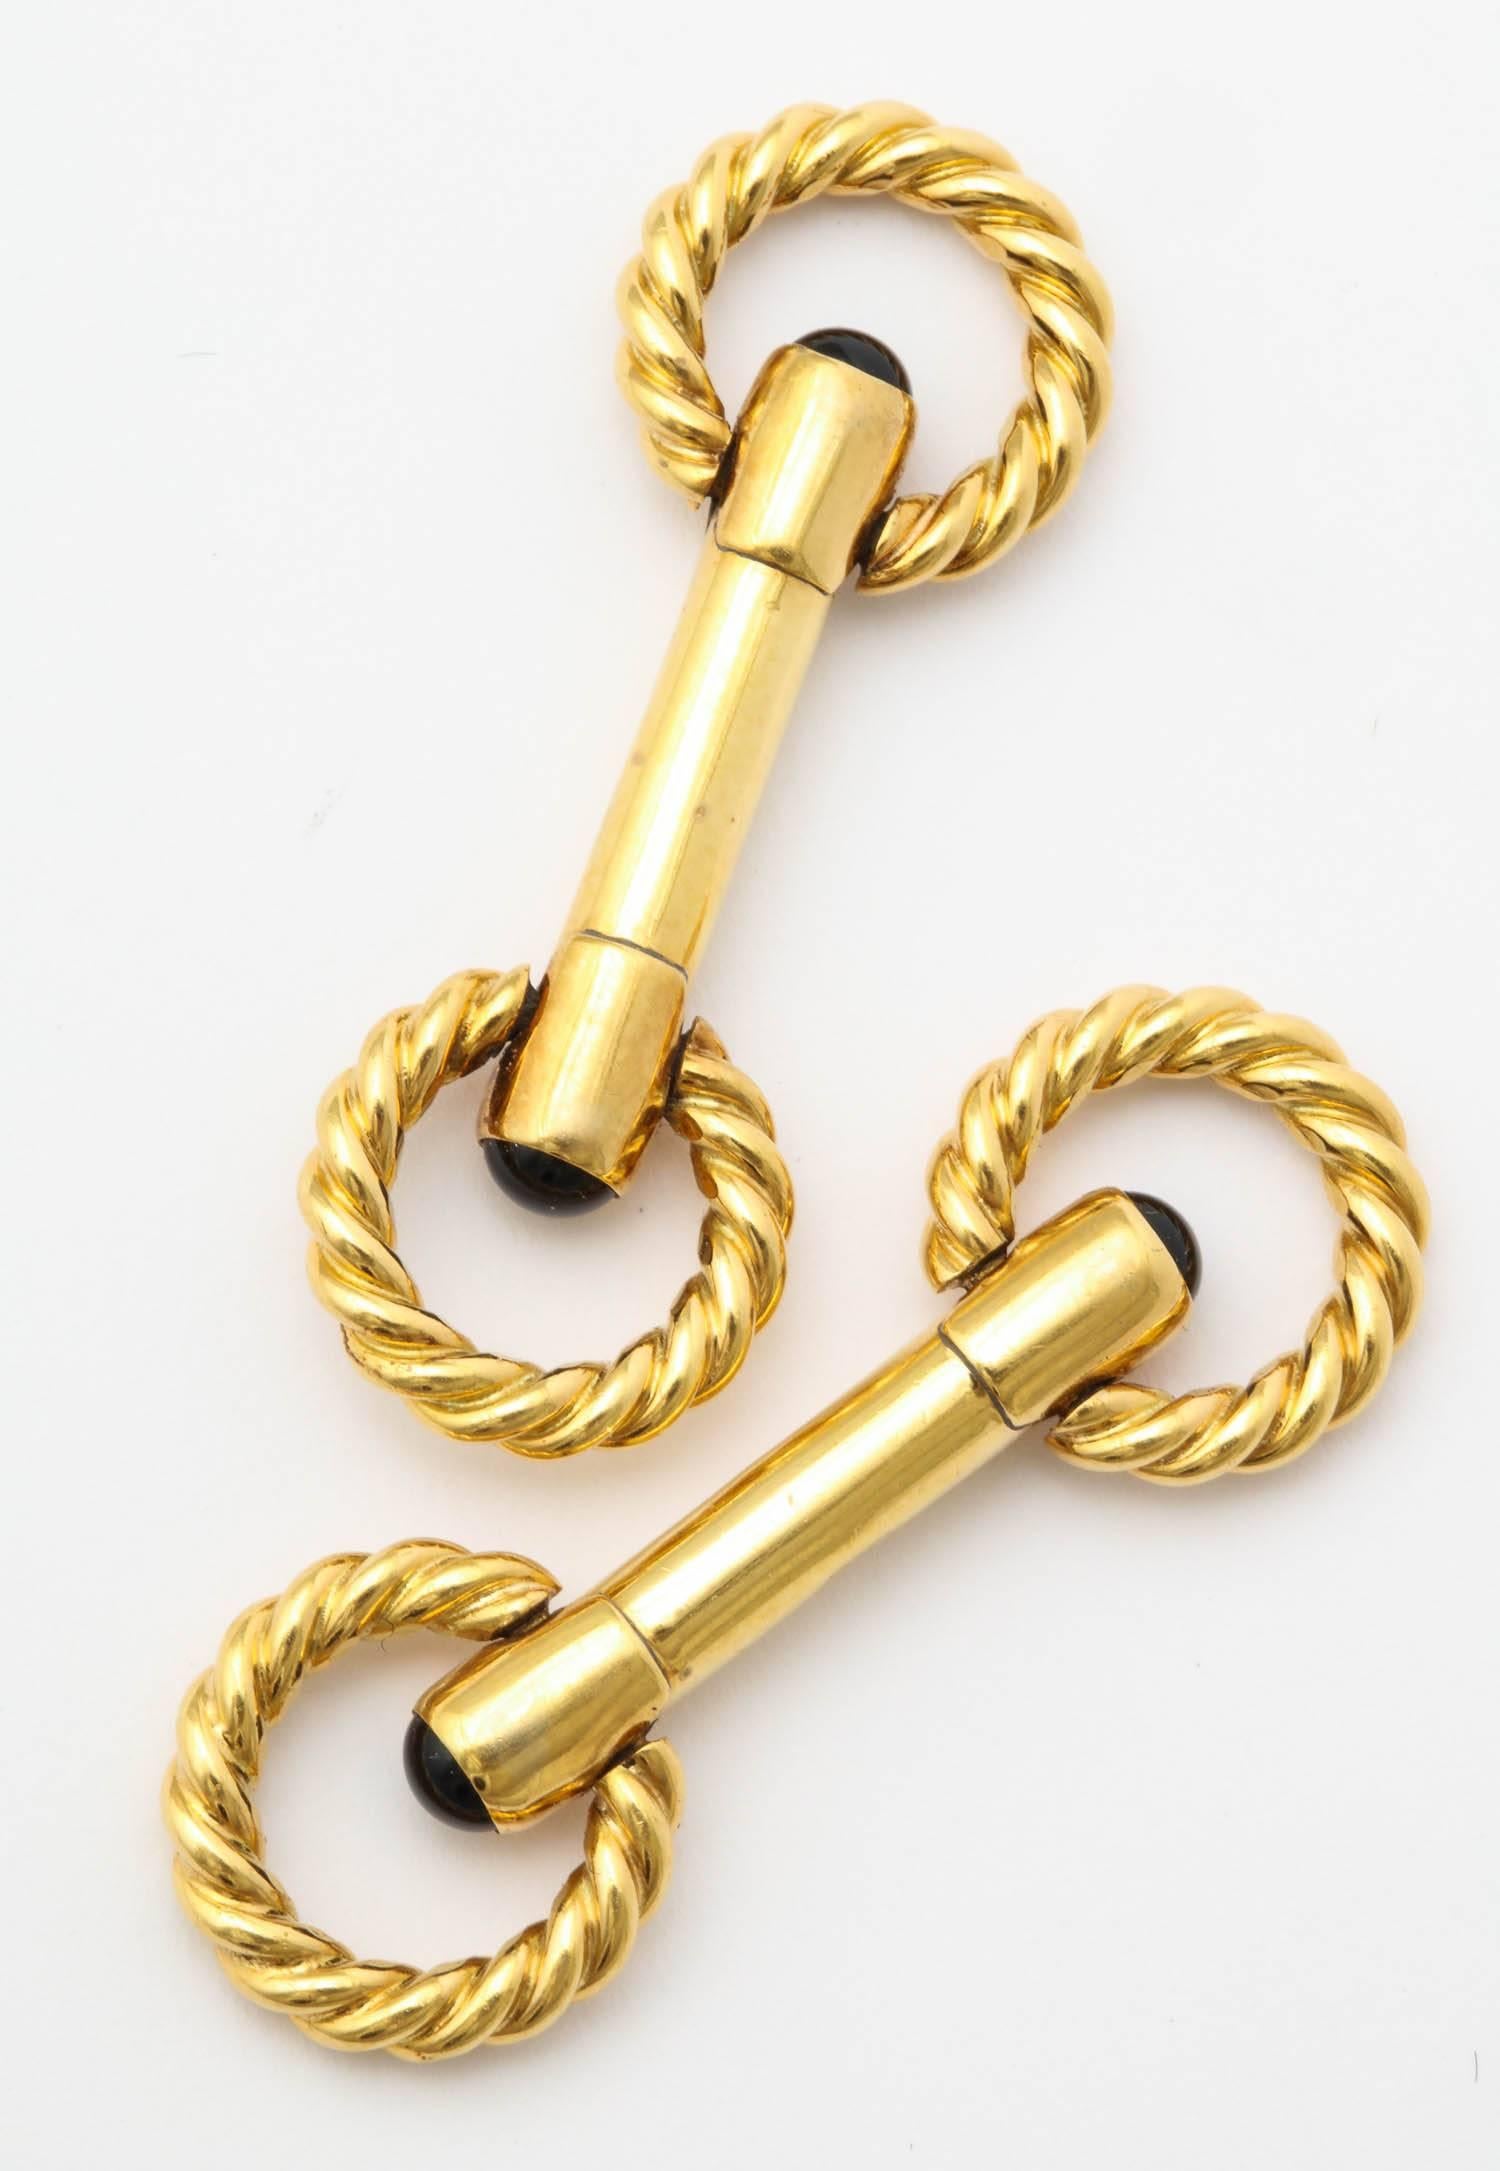 Flexible Ringe aus verdrilltem Draht, die an einem röhrenförmigen Abschnitt befestigt sind und mit einem Cabochon-Saphir abschließen  4 Cabochon-Saphire 1,00 Karat
12.7 Gramm 18k Gold